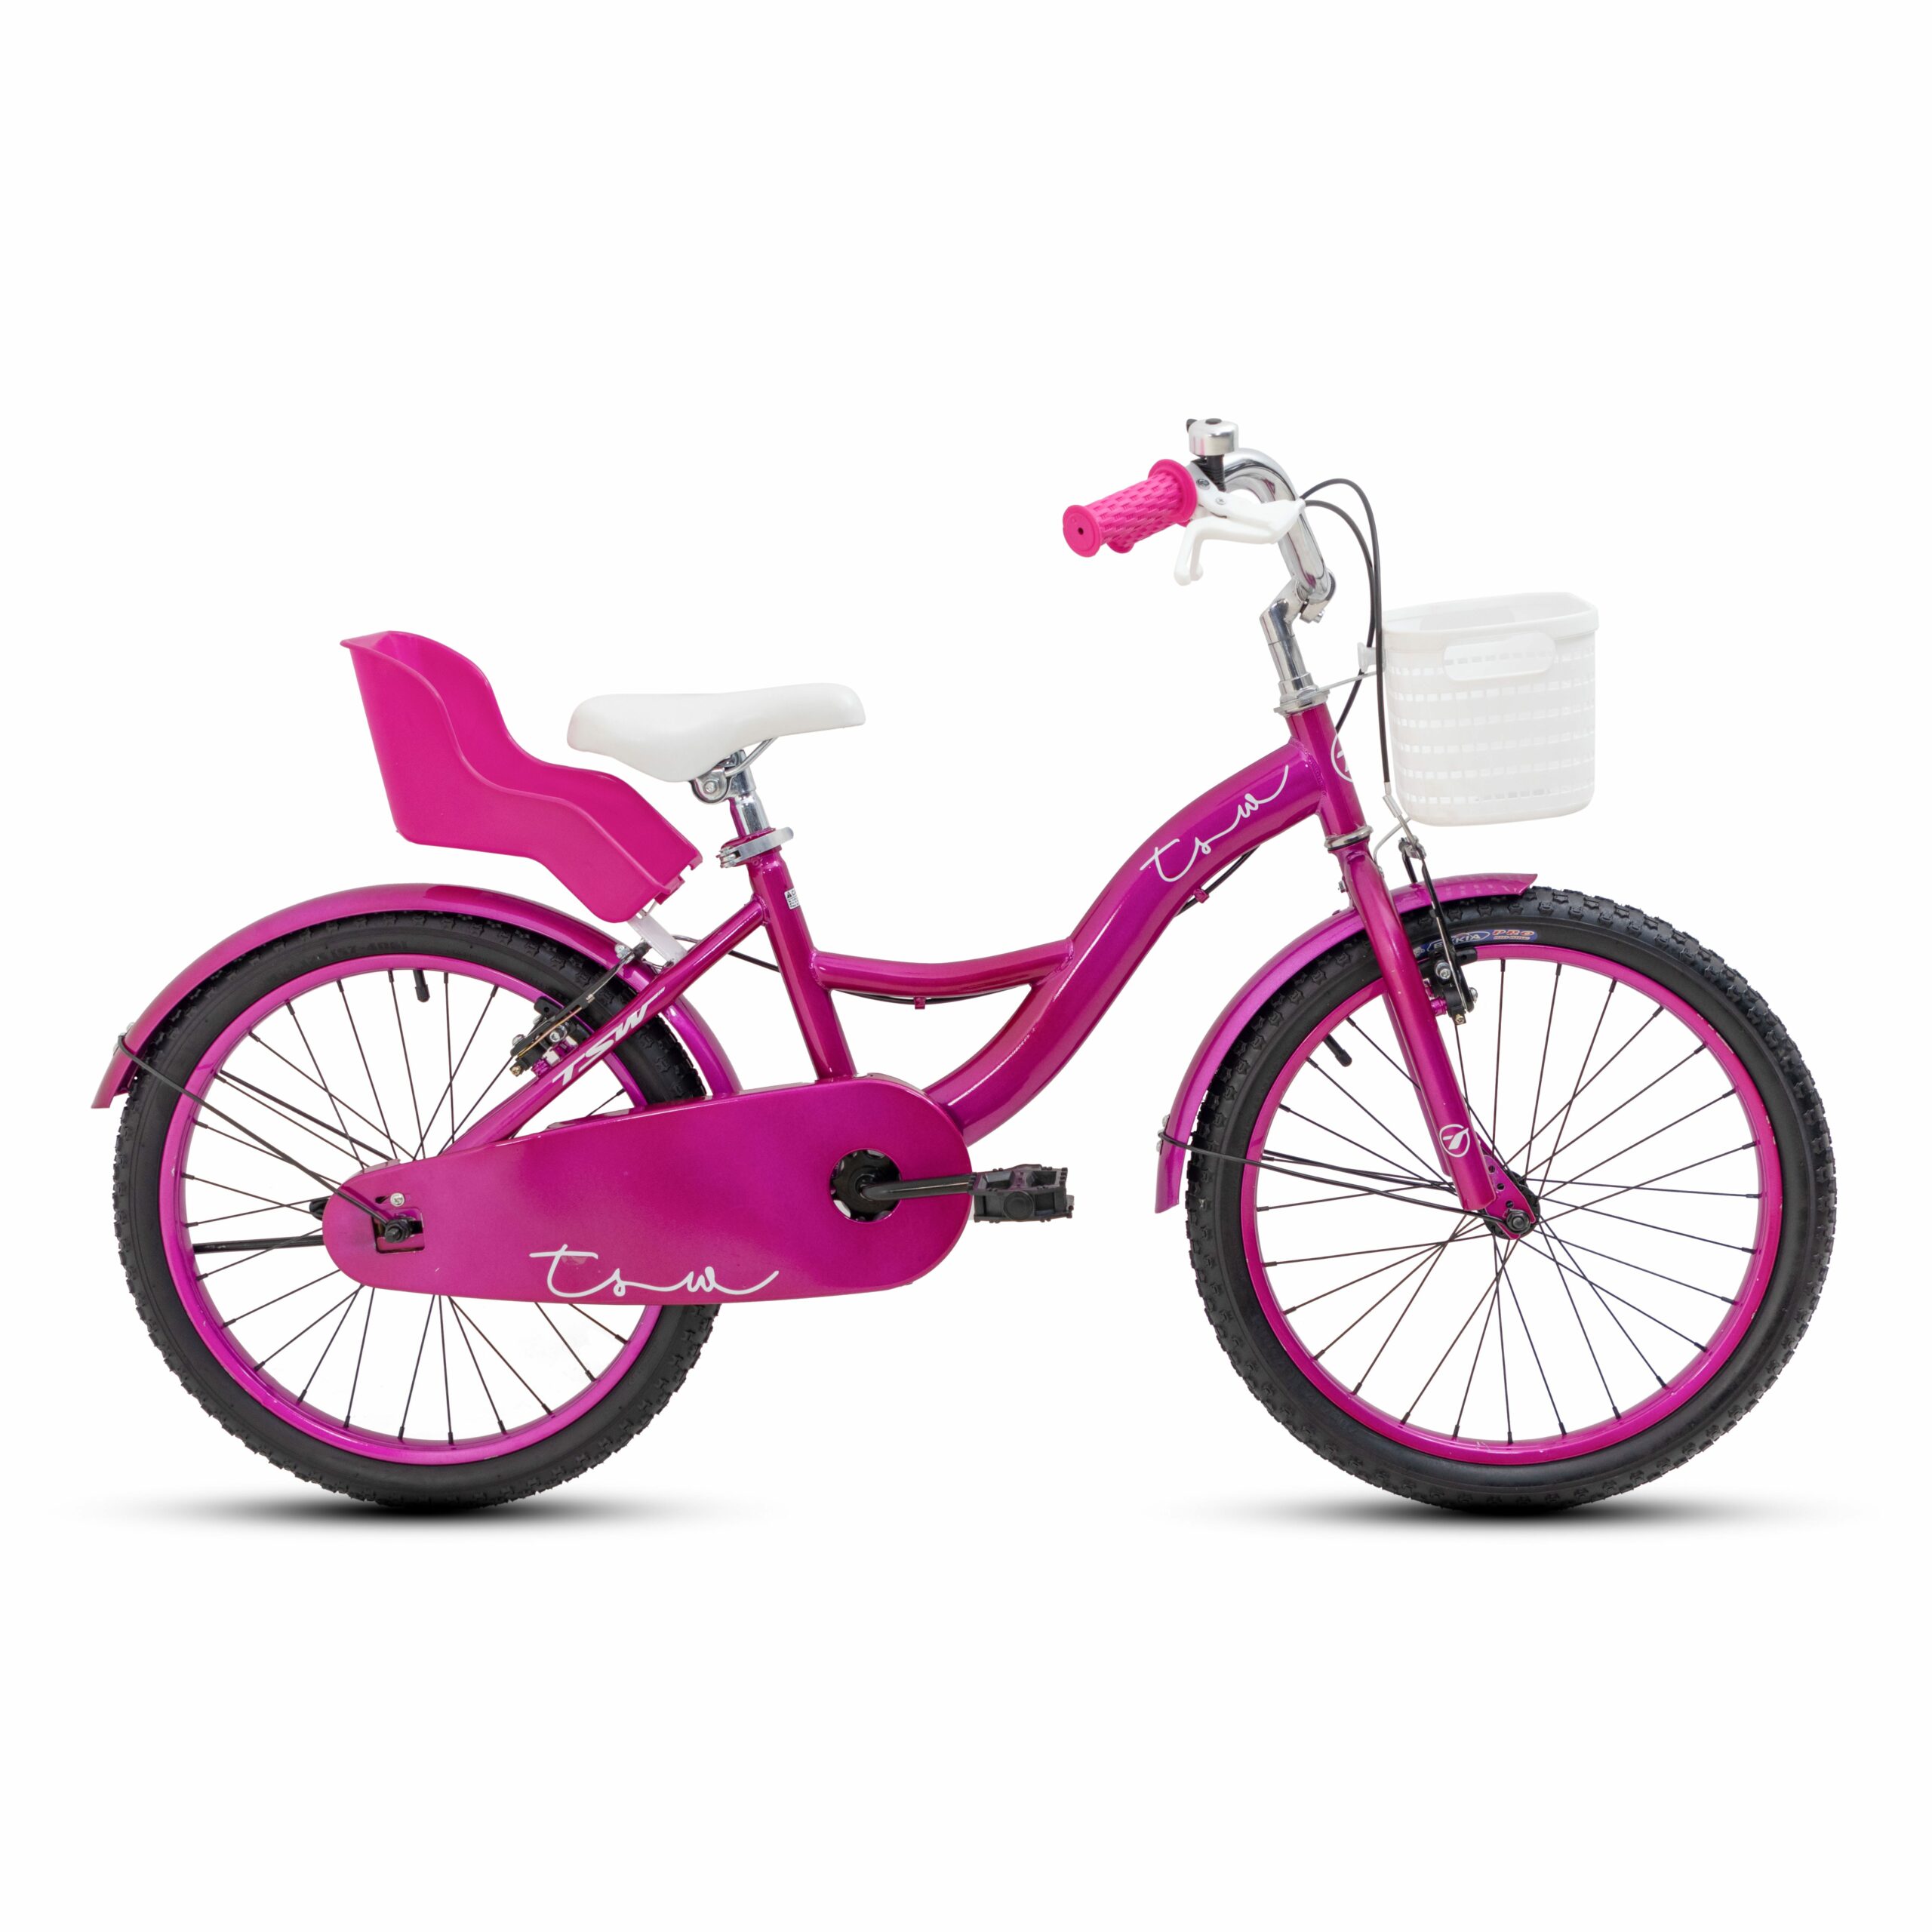 Bicicleta TSW Posh aro 20" - Violeta